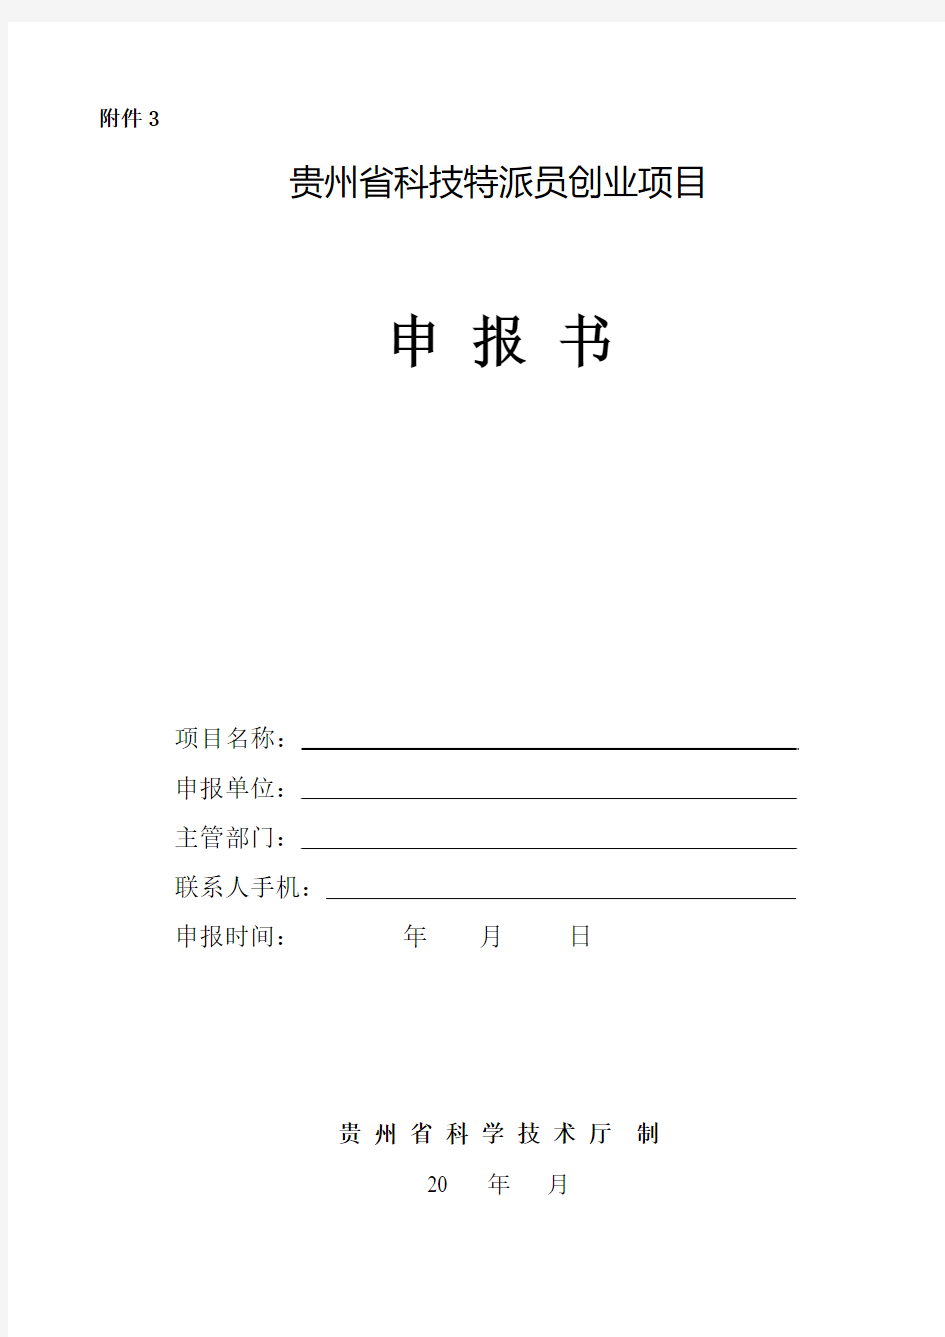 贵州省星火计划项目可行性研究报告(提纲)